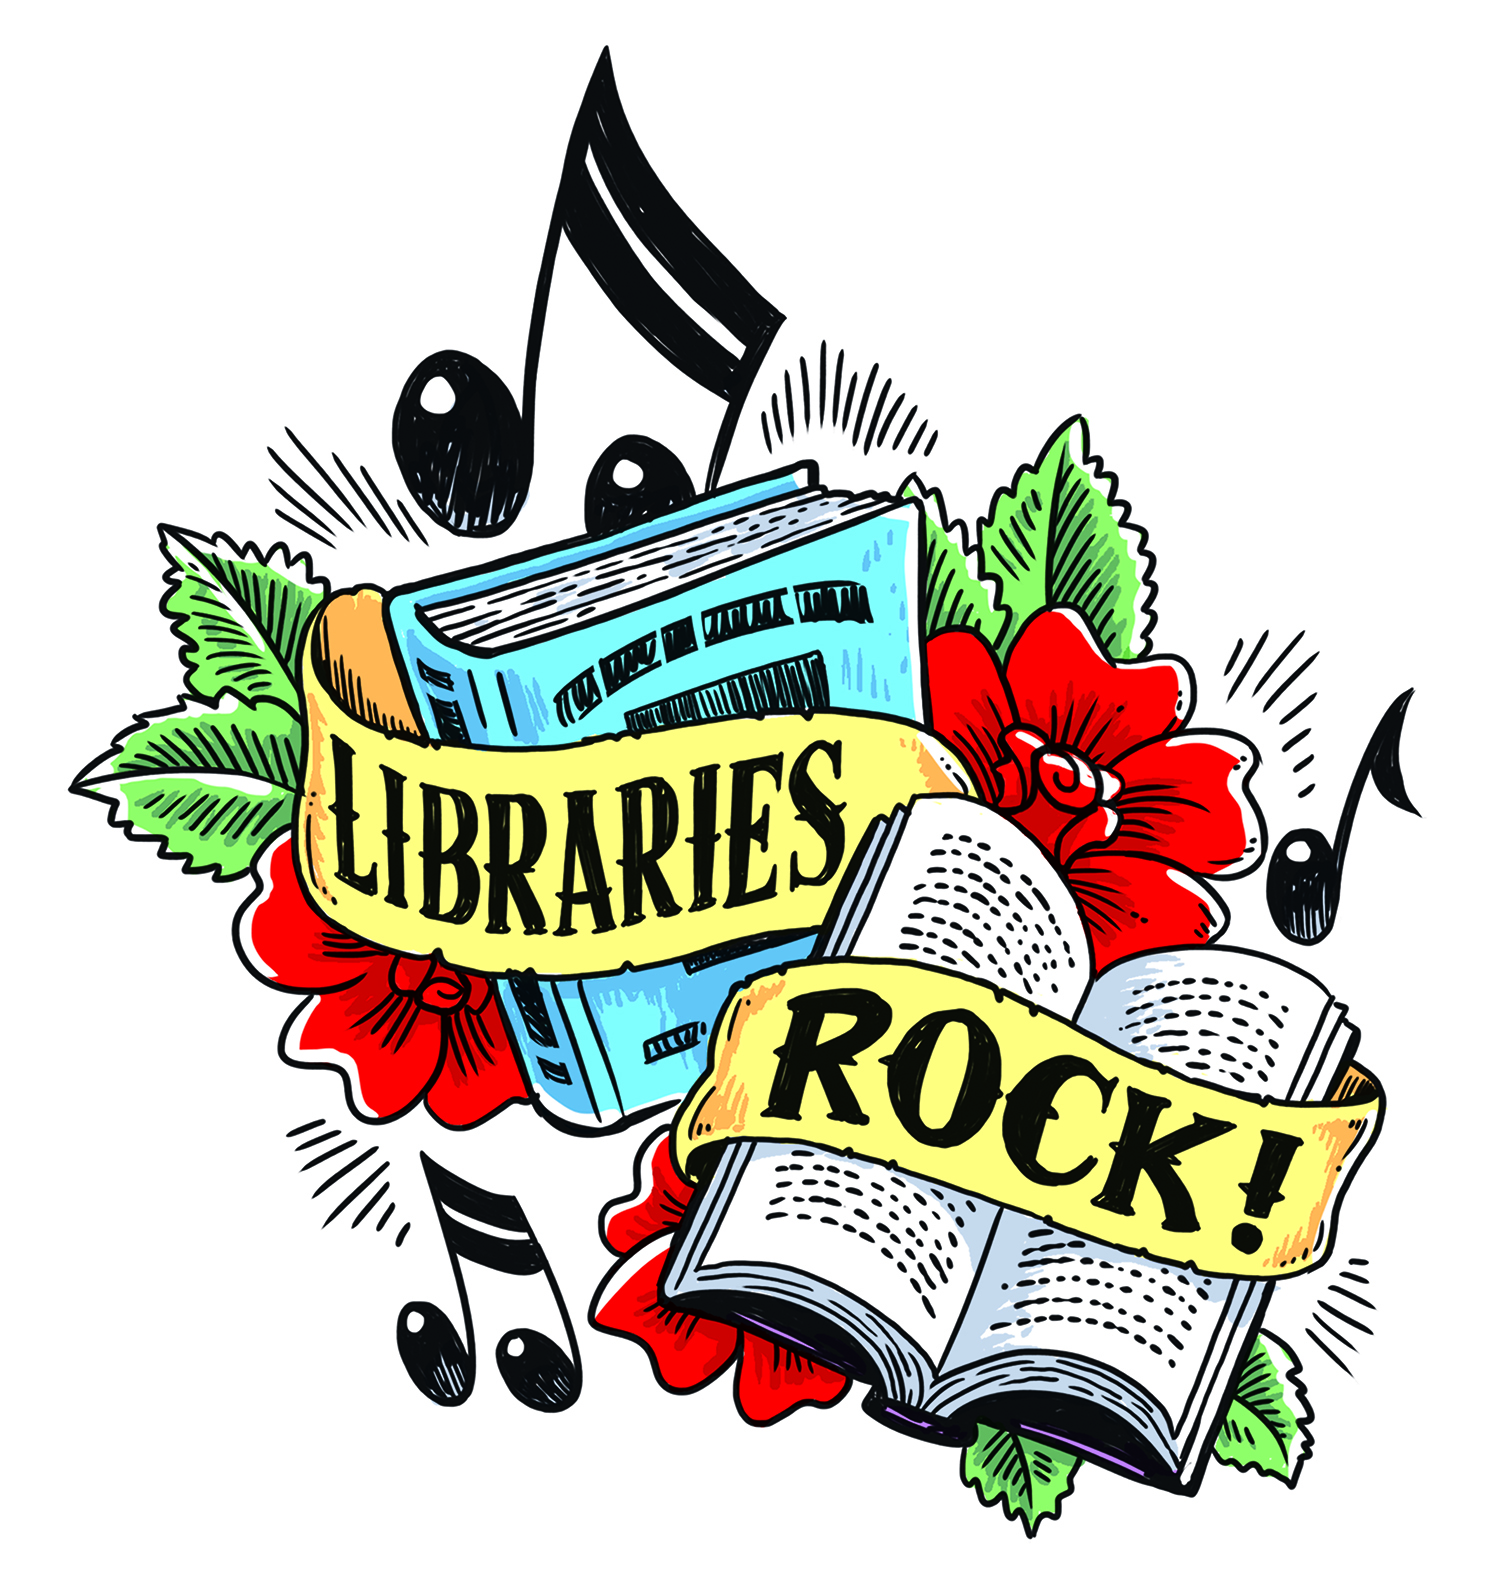 Libraries rock logo image